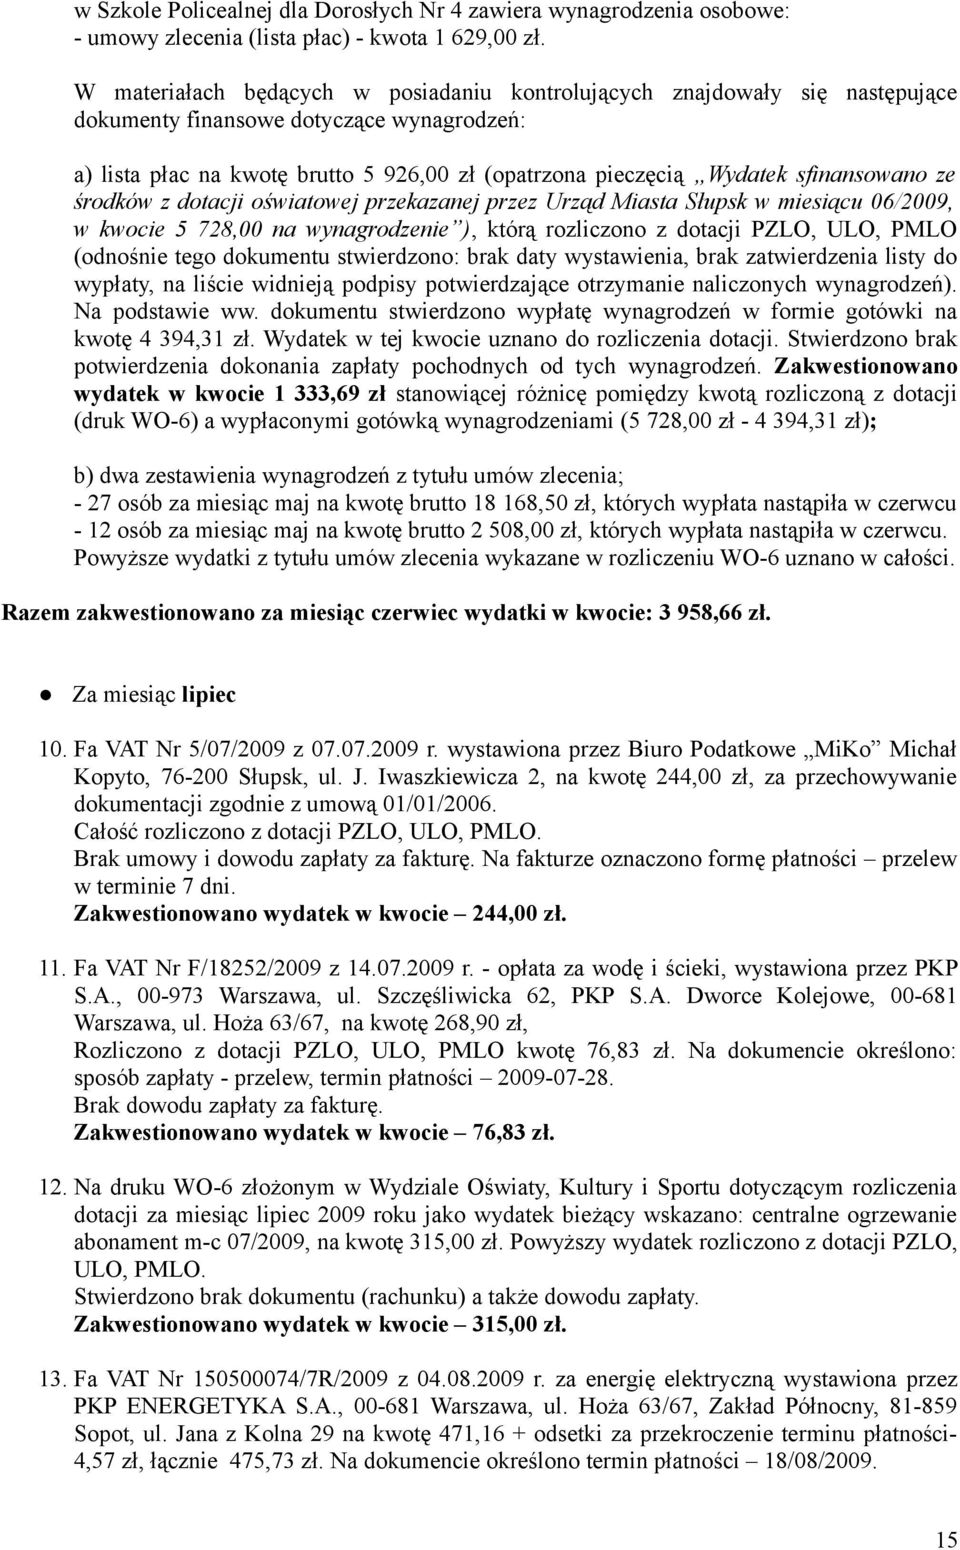 sfinansowano ze środków z dotacji oświatowej przekazanej przez Urząd Miasta Słupsk w miesiącu 06/2009, w kwocie 5 728,00 na wynagrodzenie ), którą rozliczono z dotacji PZLO, ULO, PMLO (odnośnie tego